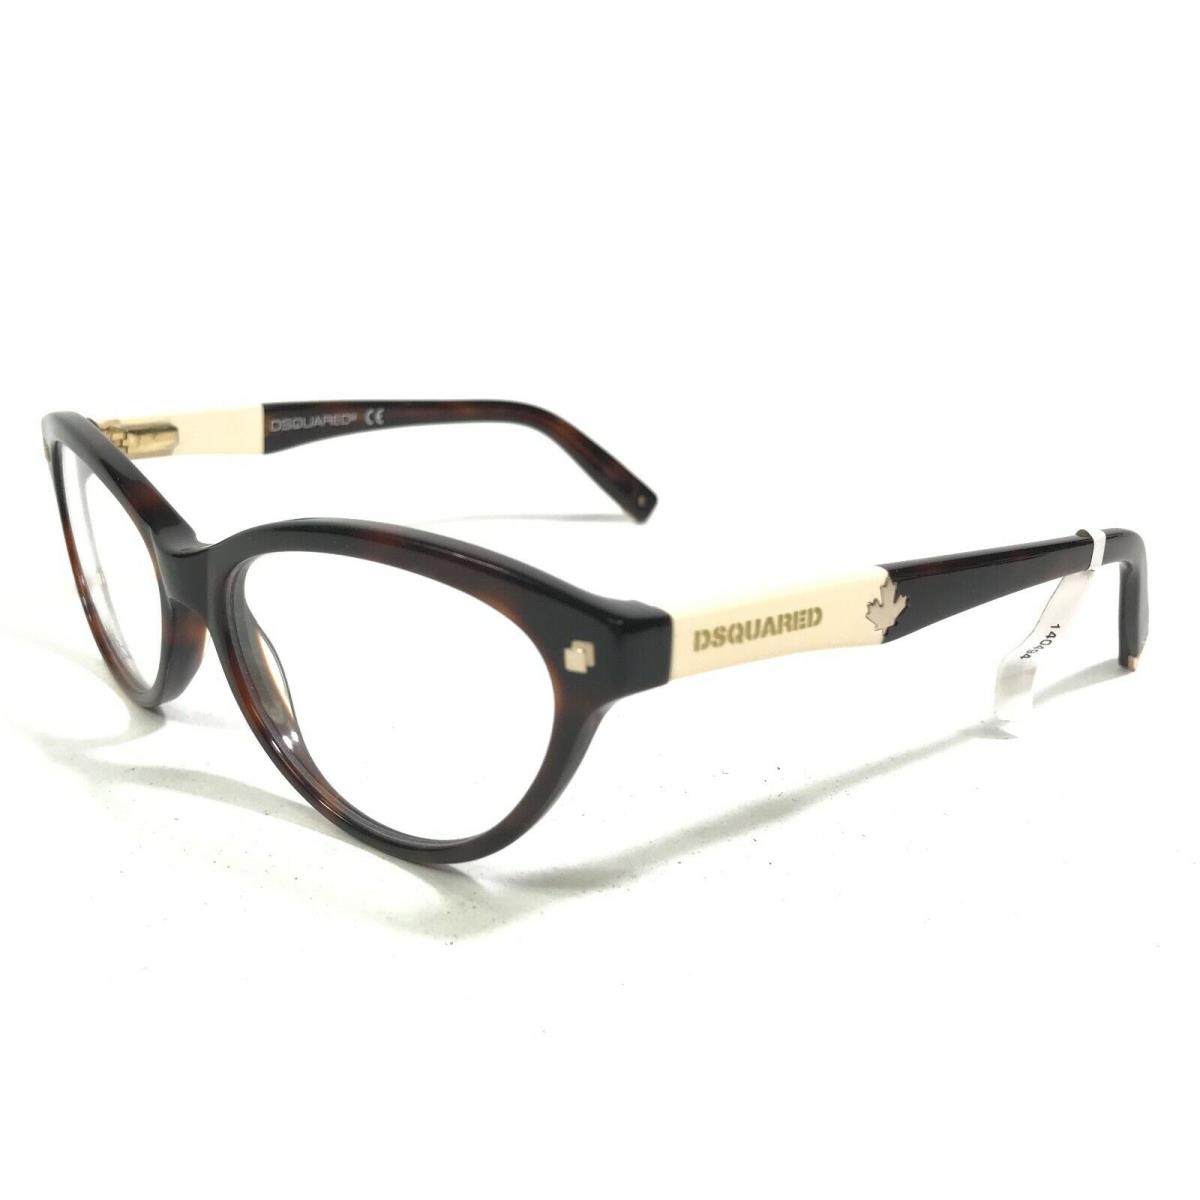 Dsquared2 DQ5116 COL.052 Eyeglasses Frames Brown White Oval Full Rim 54-16-140